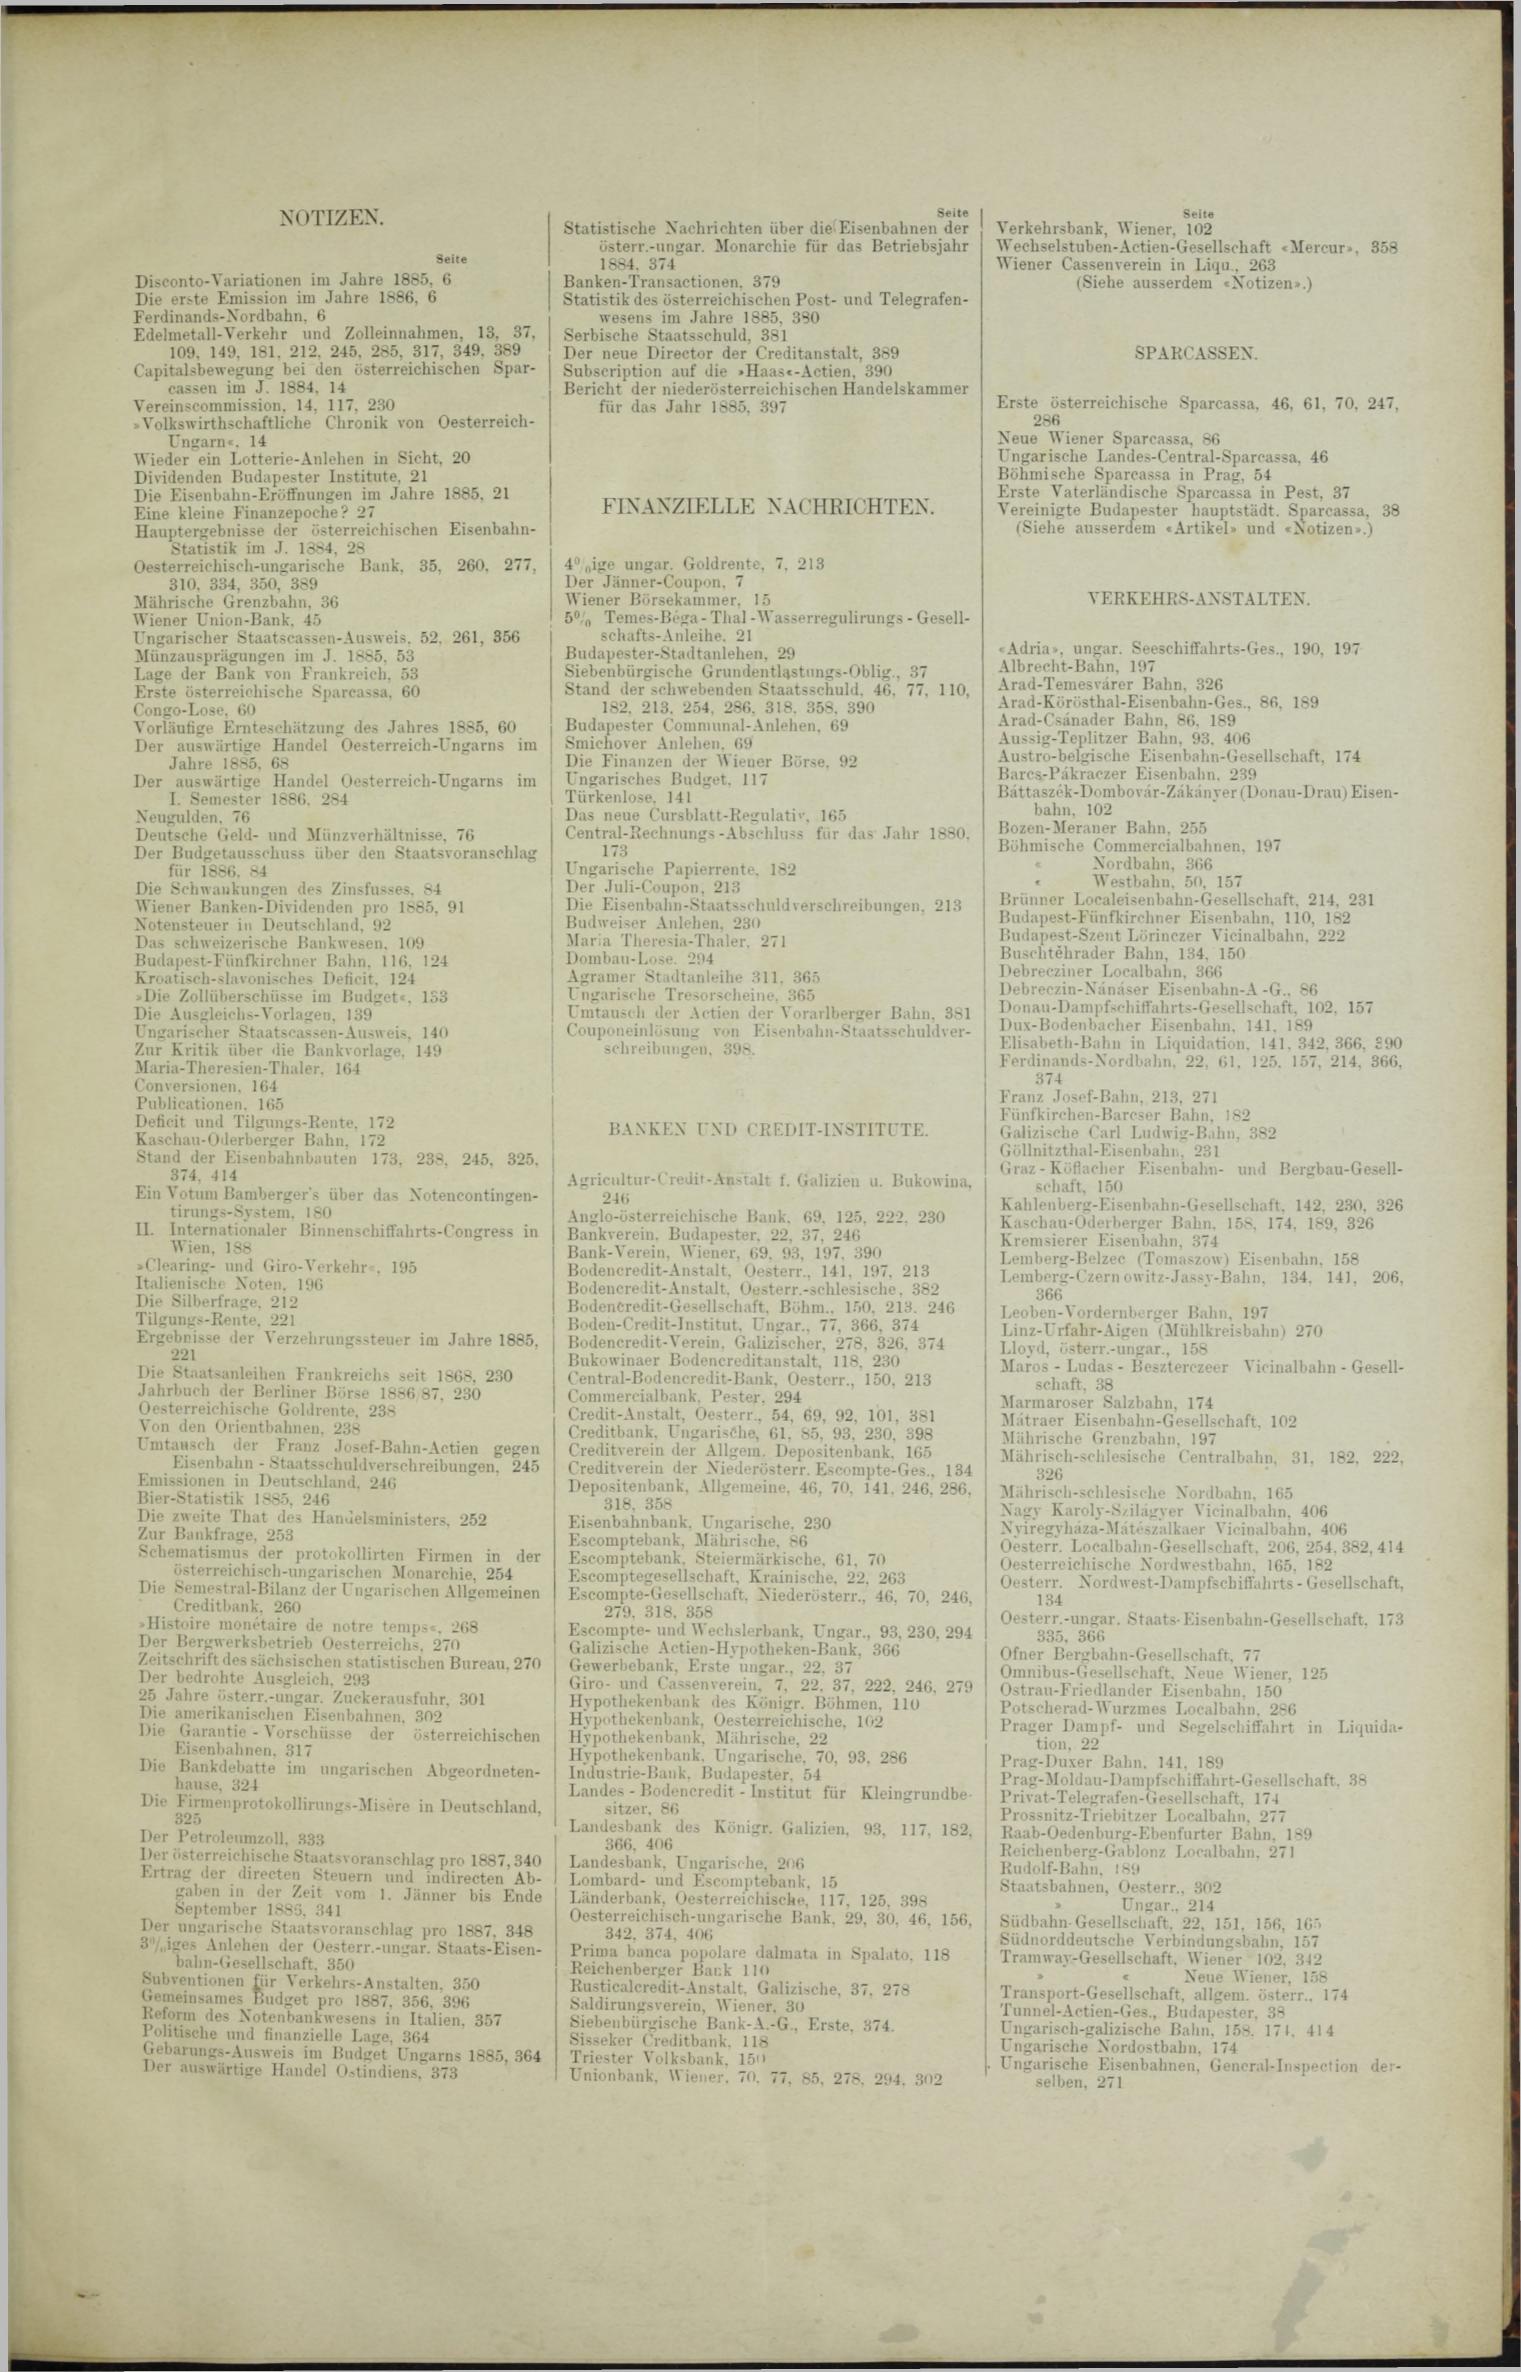 Der Tresor 06.05.1886 - Seite 21